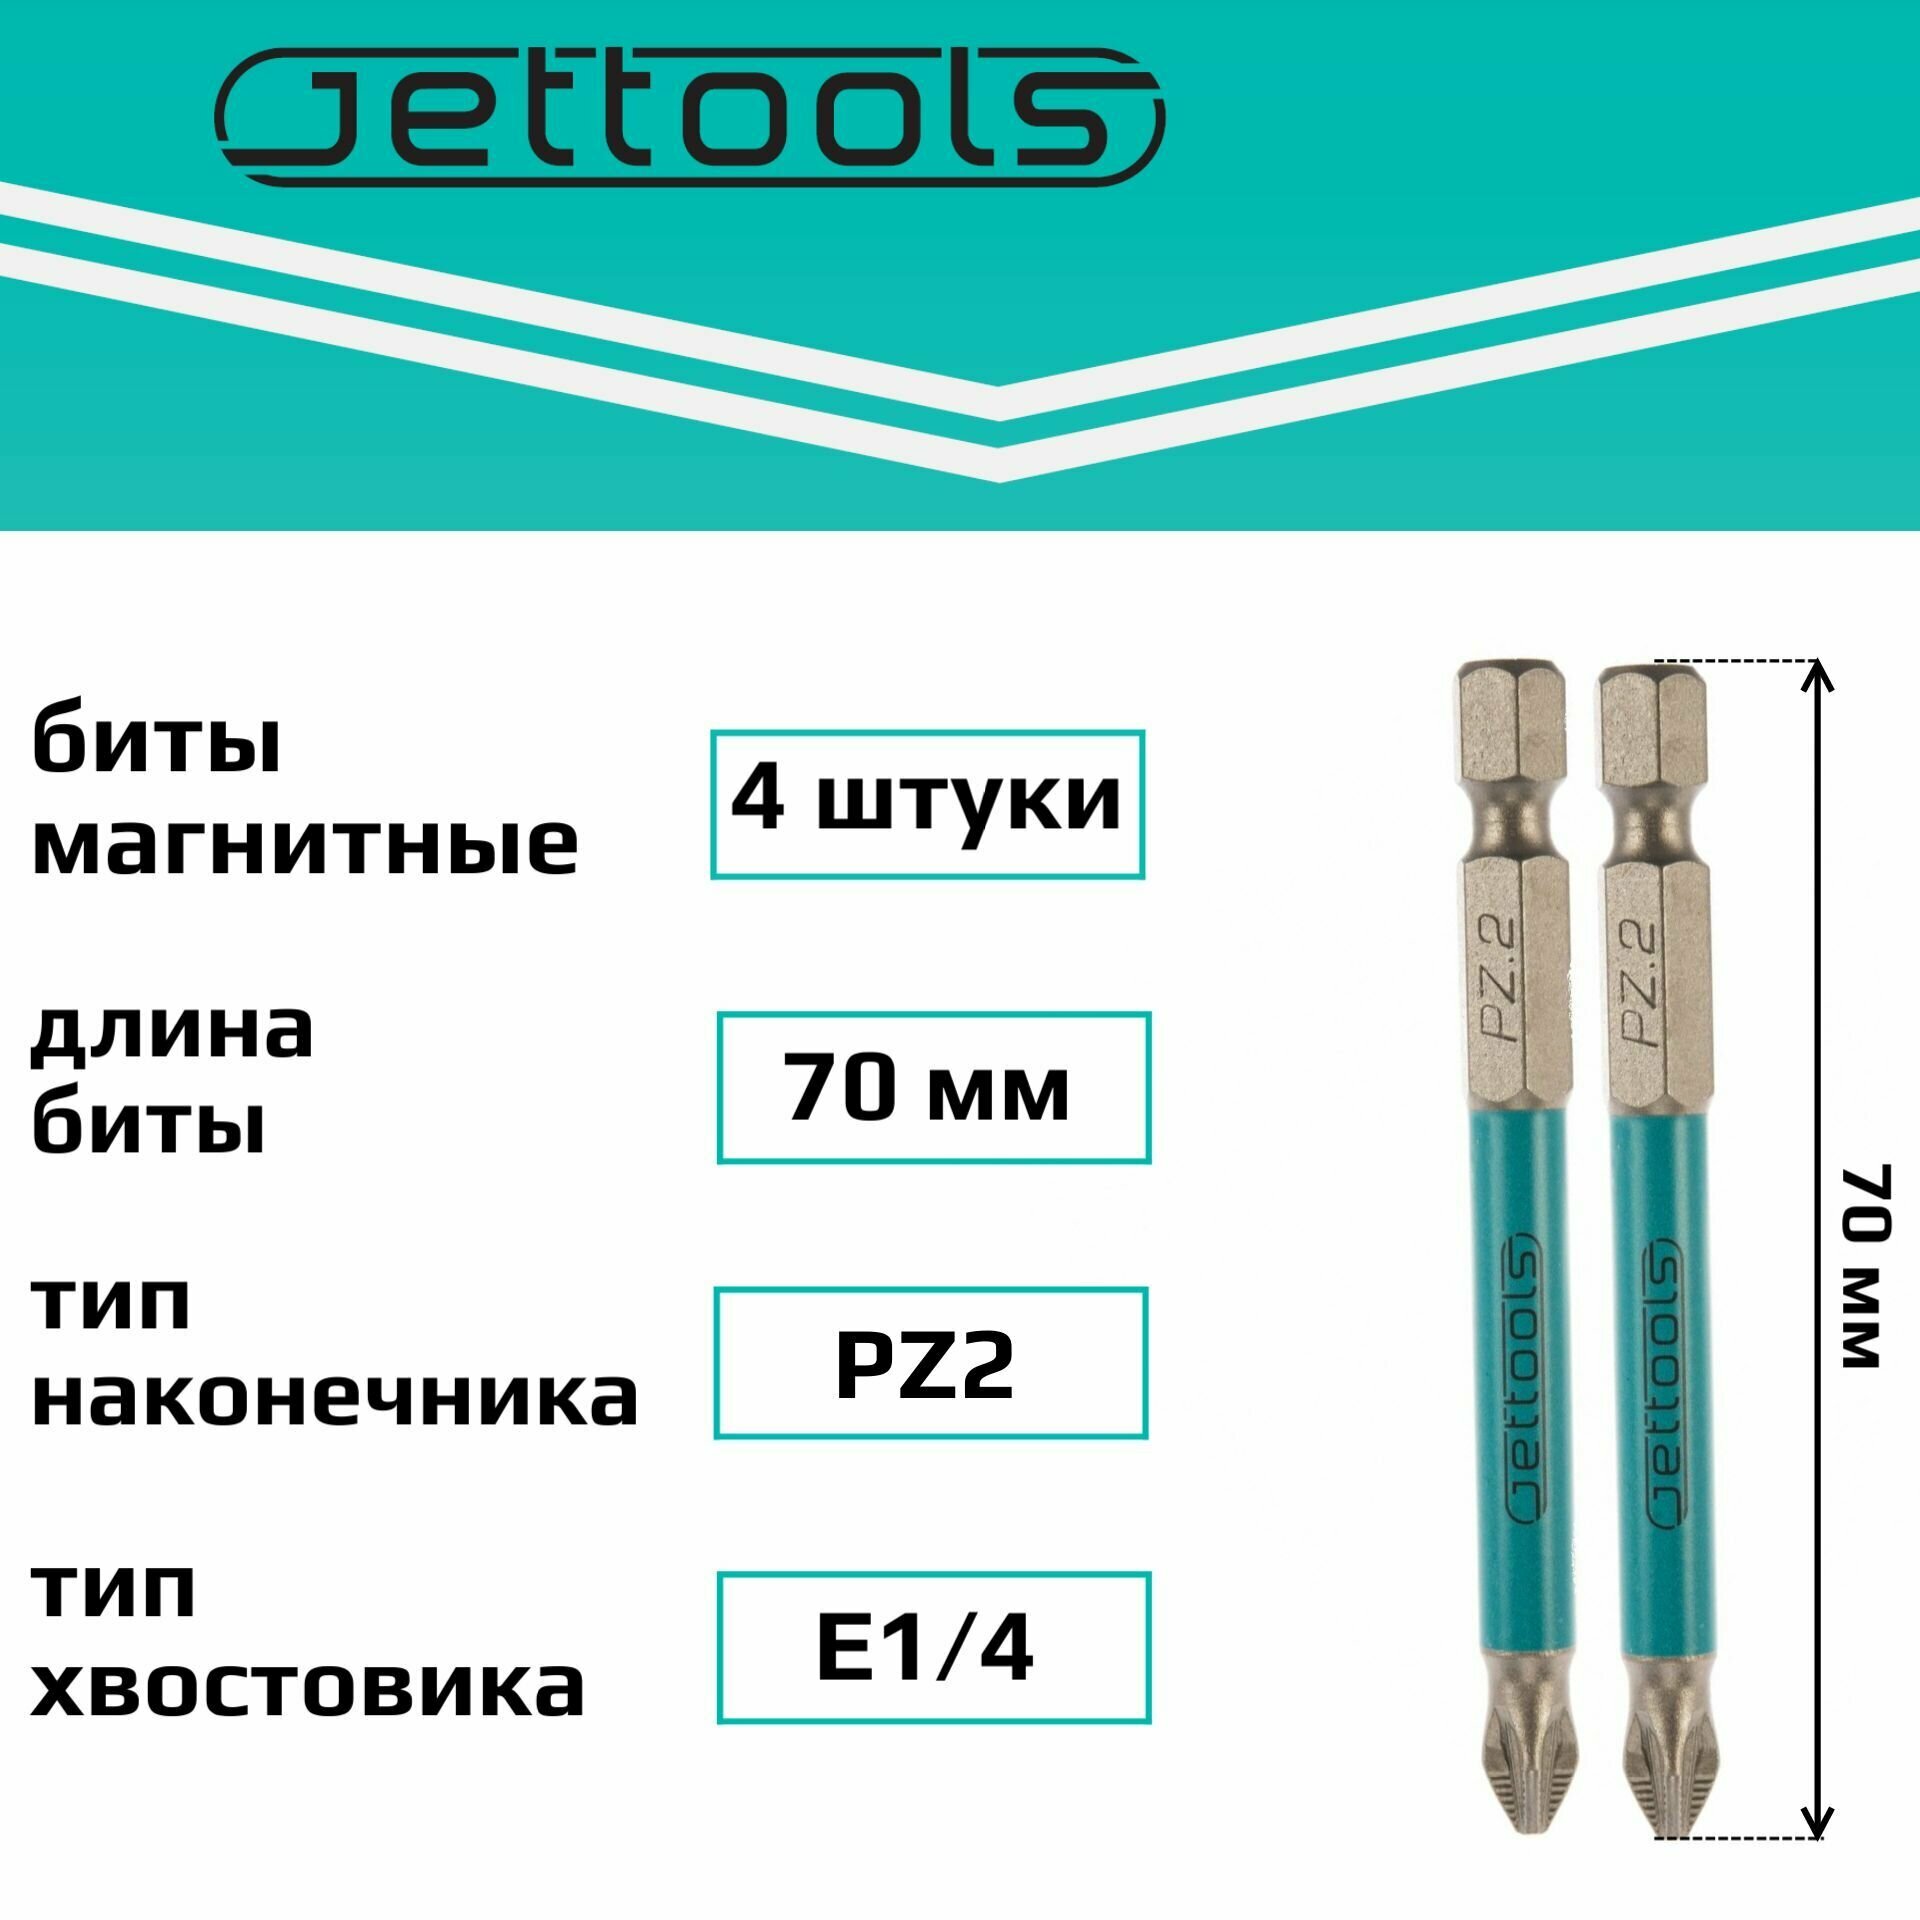 Биты PZ2 70 мм Jettools магнитные для шуруповерта для больших нагрузок, 4 штуки